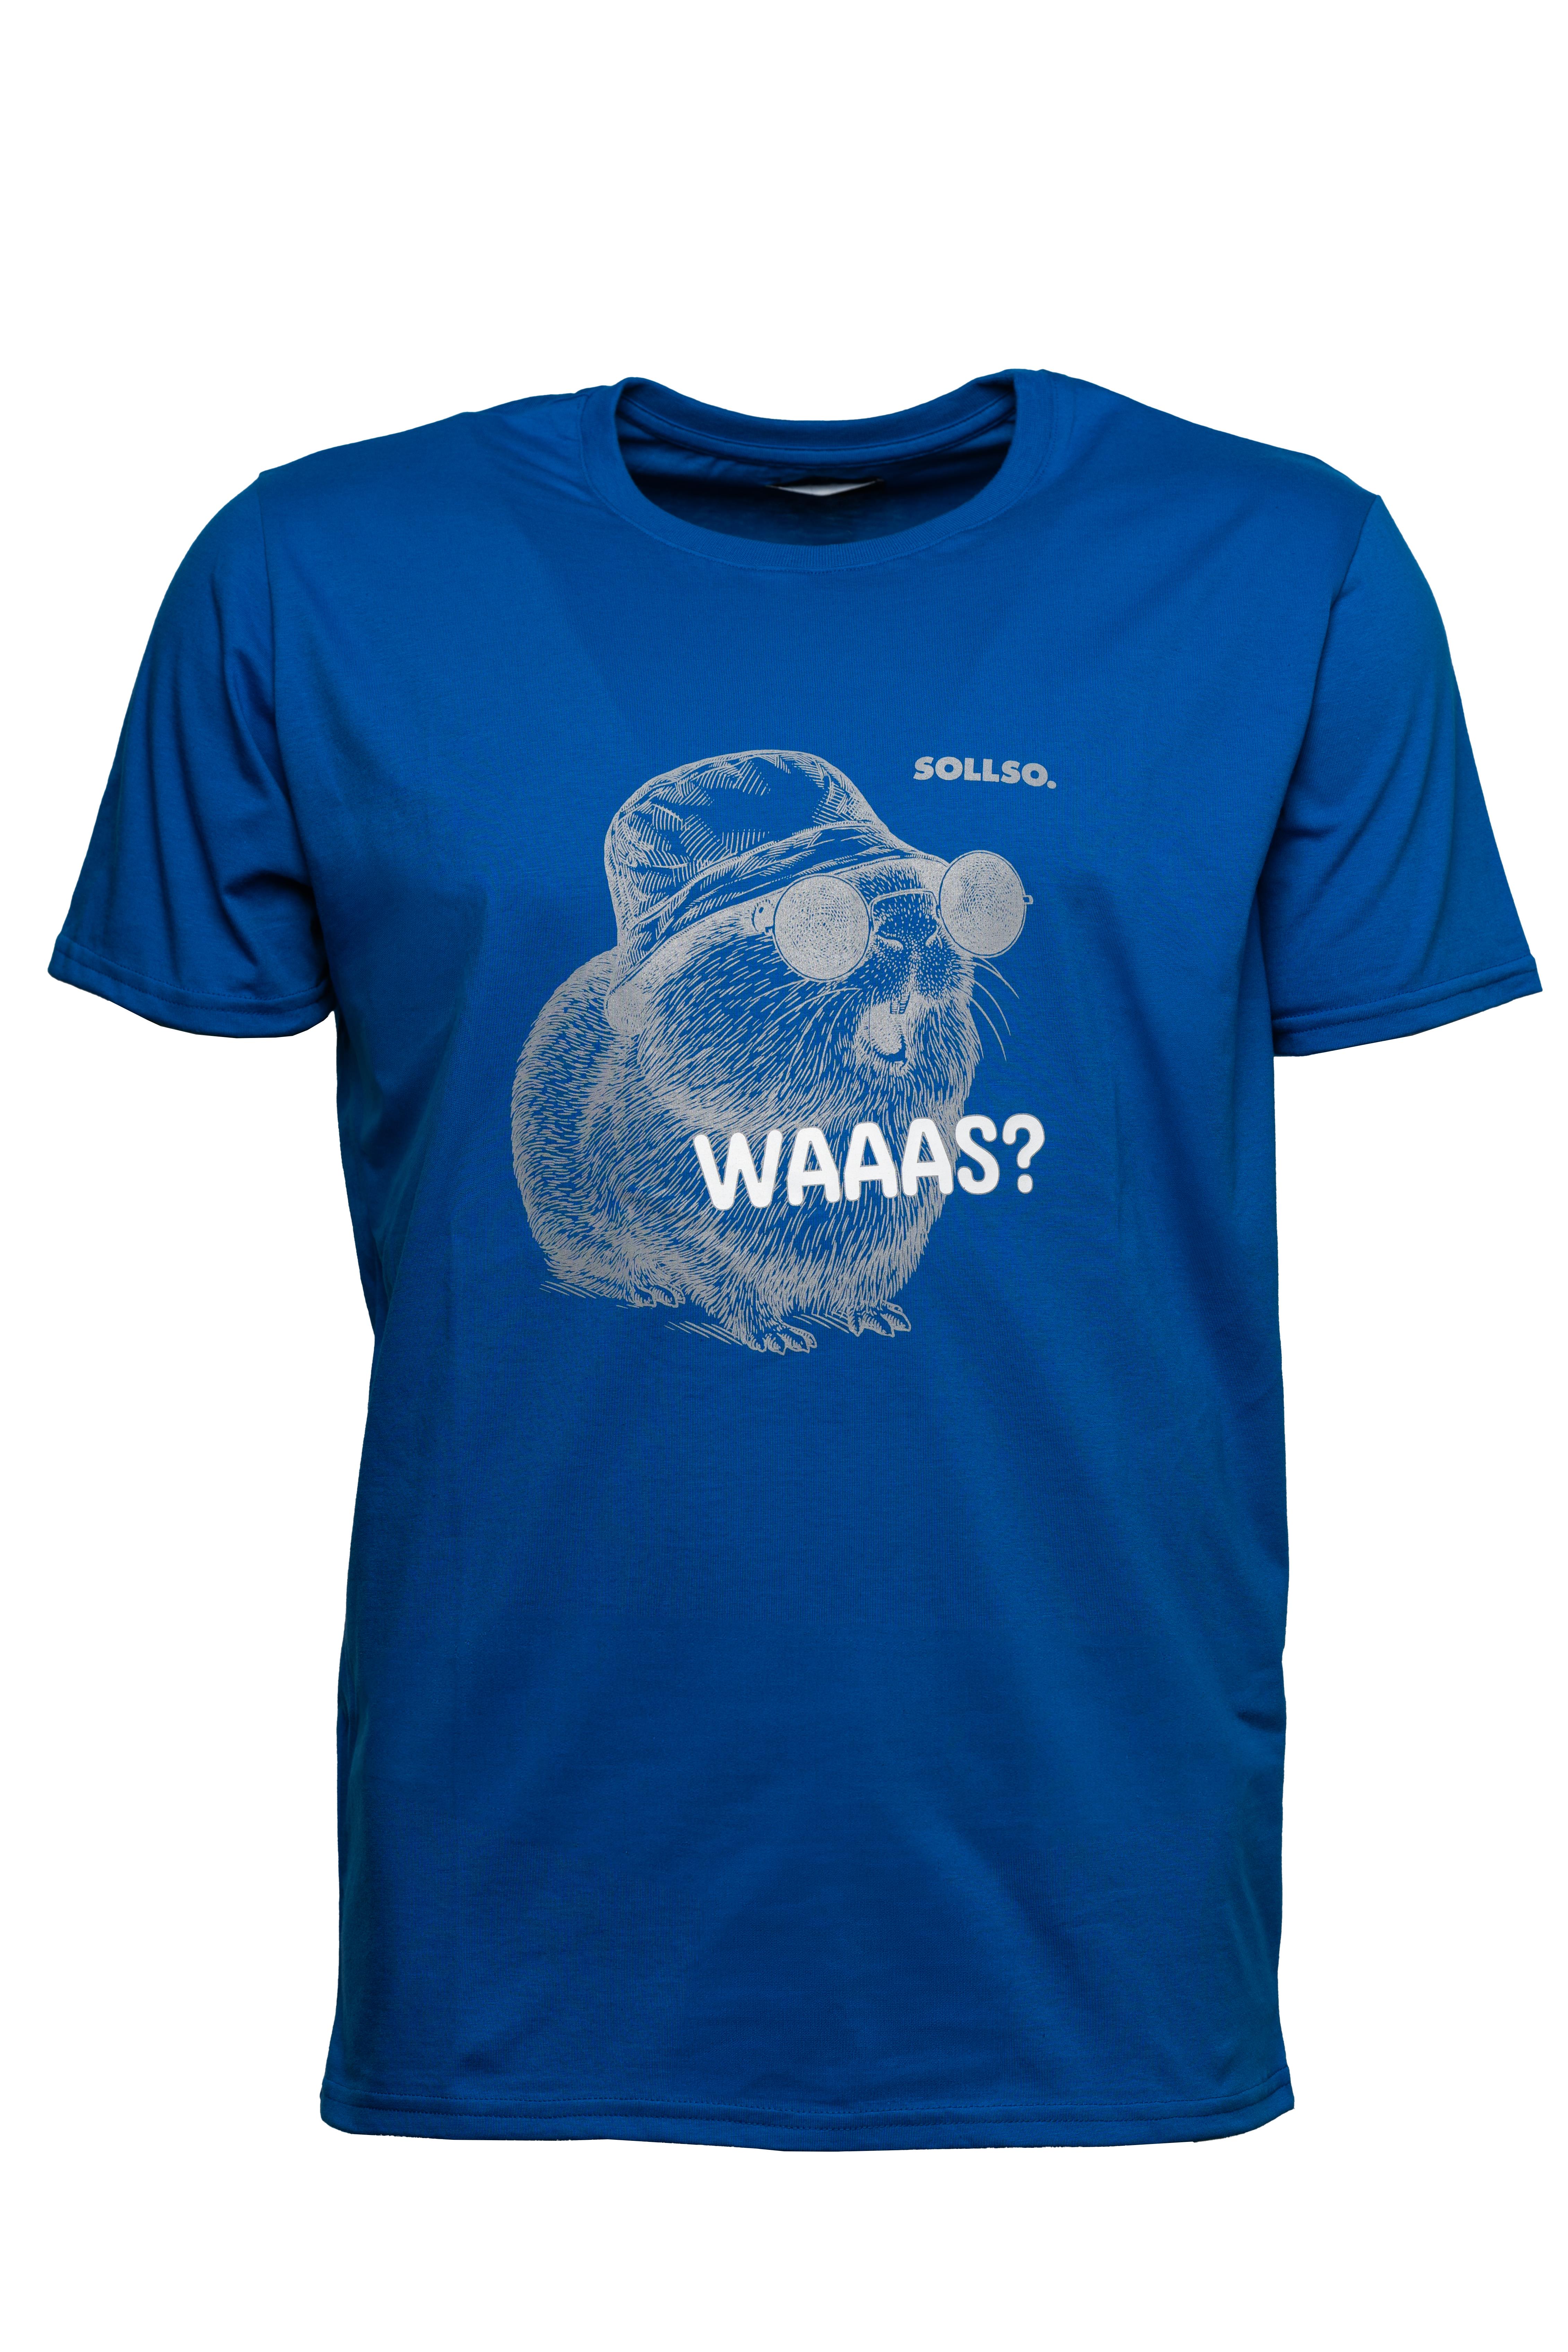 SOLLSO. T-Shirt "Guinea Pig" Farbe Ocean Blue, Größe M